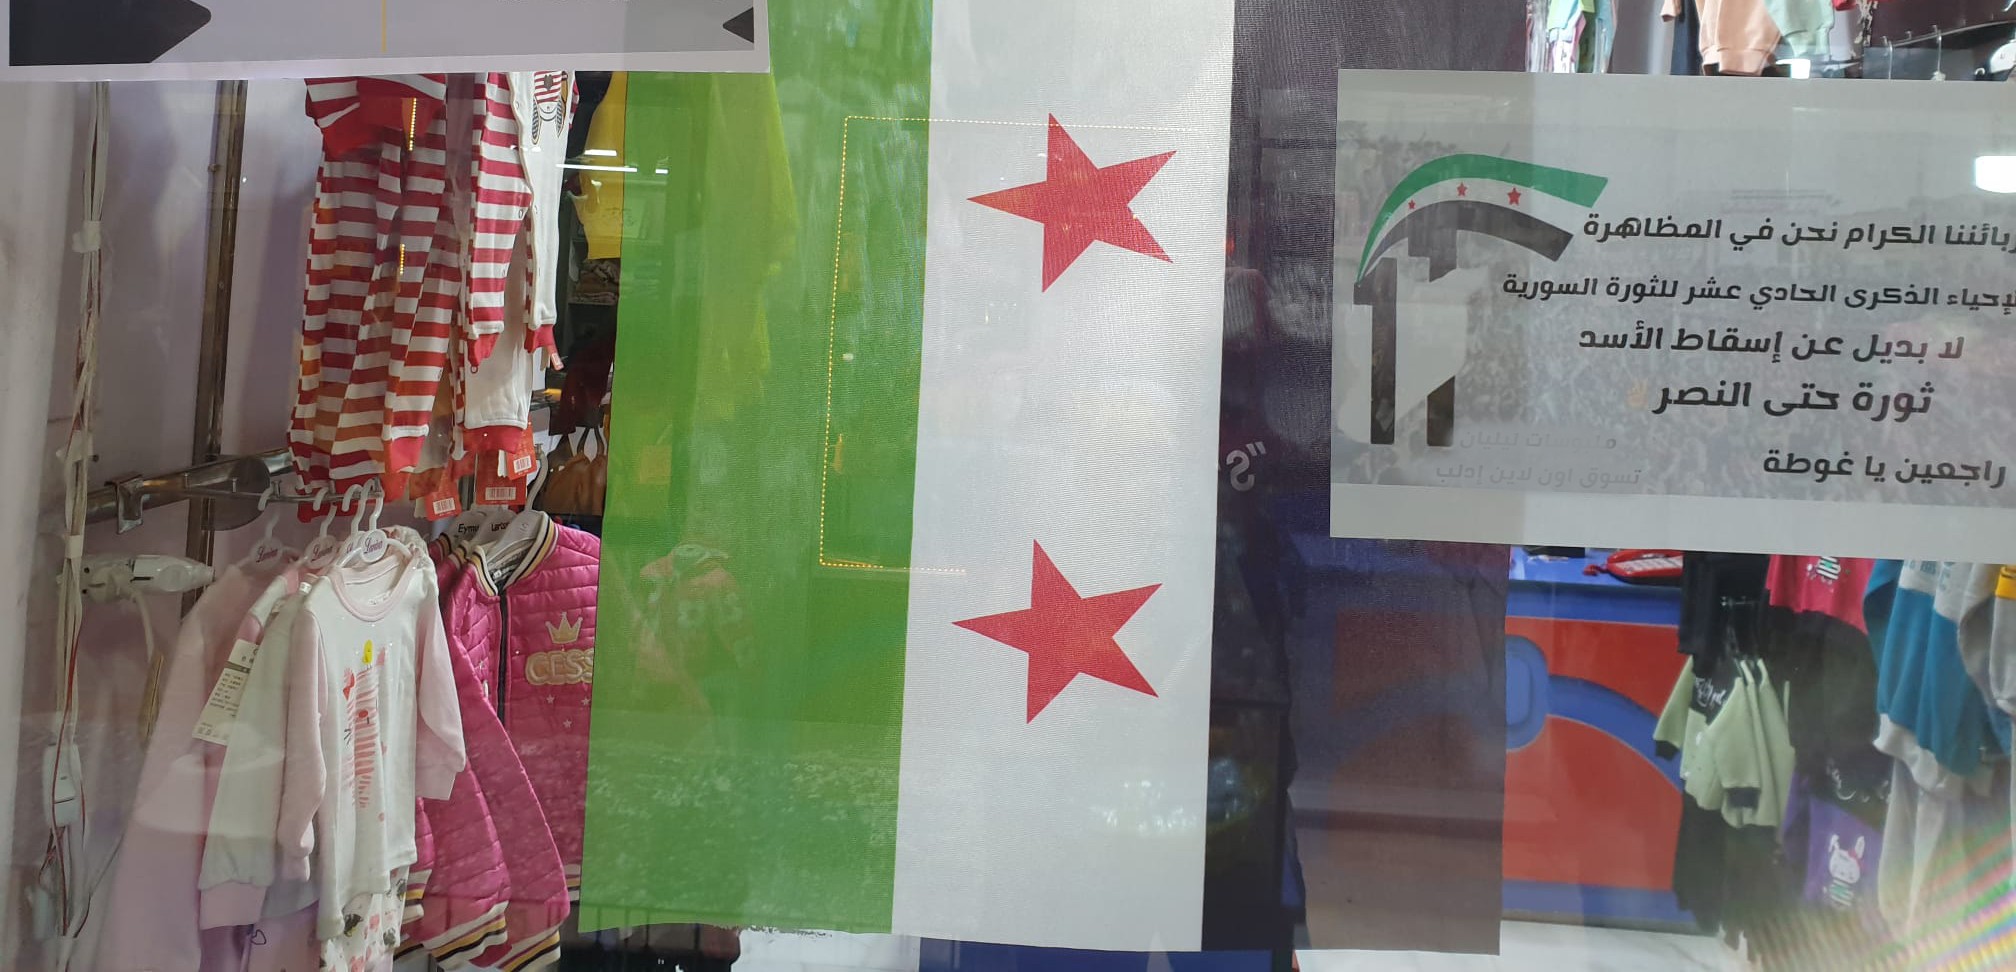 واجهة محل تجاري في الشمال السوري يرفع علم الثورة (السوري اليوم)